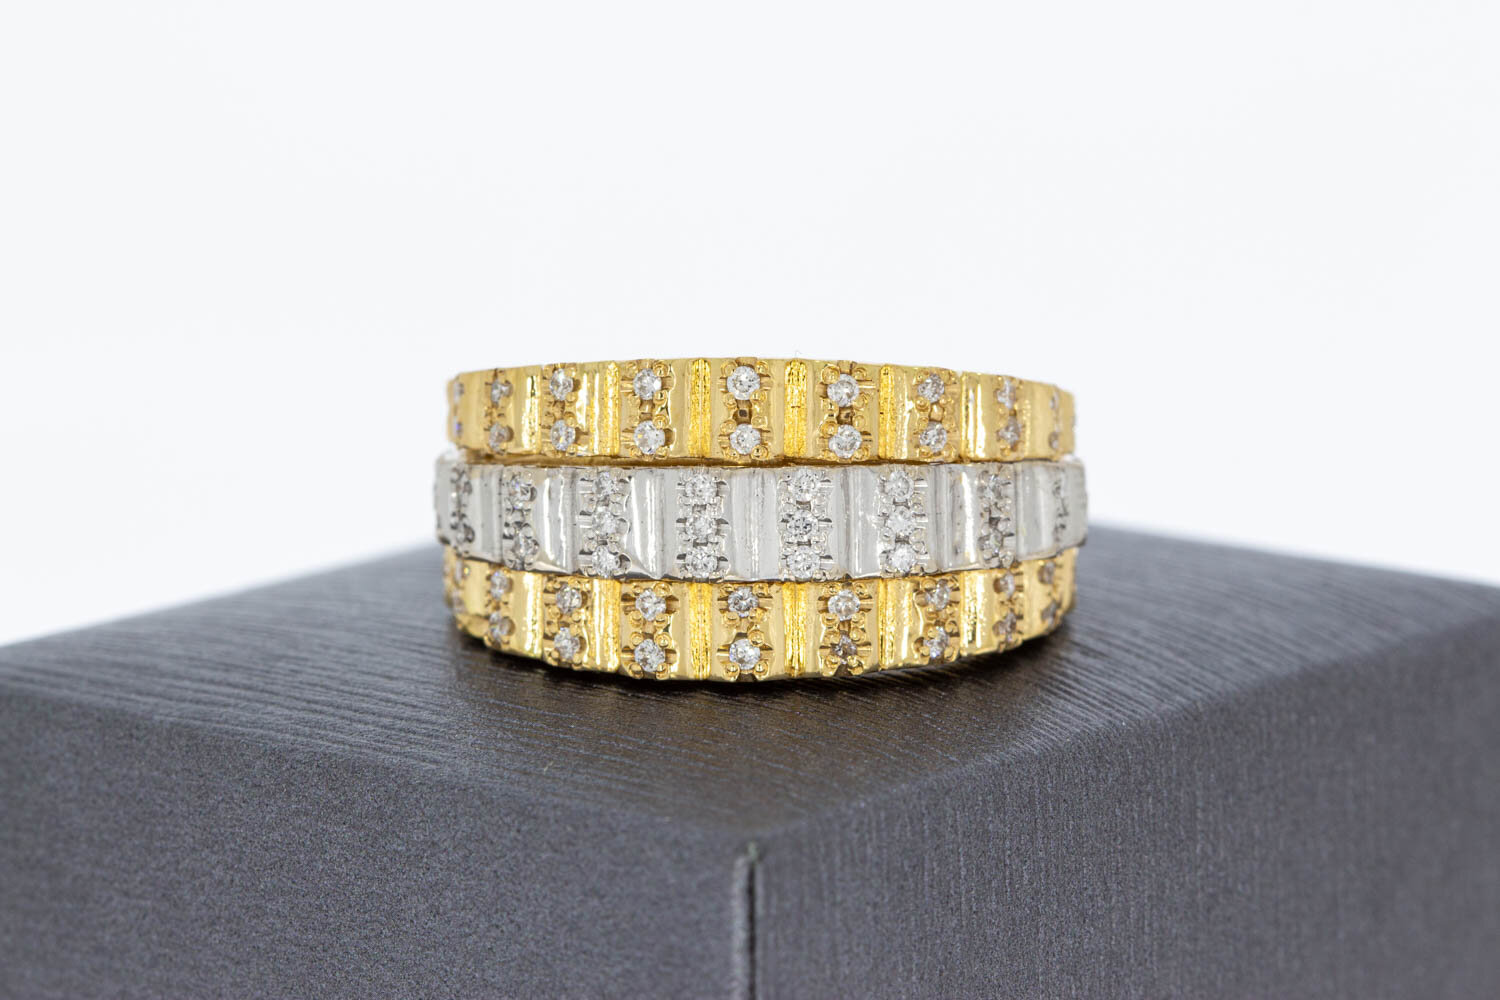 750 Goldene Ring im Rolex-Stil - 21 mm